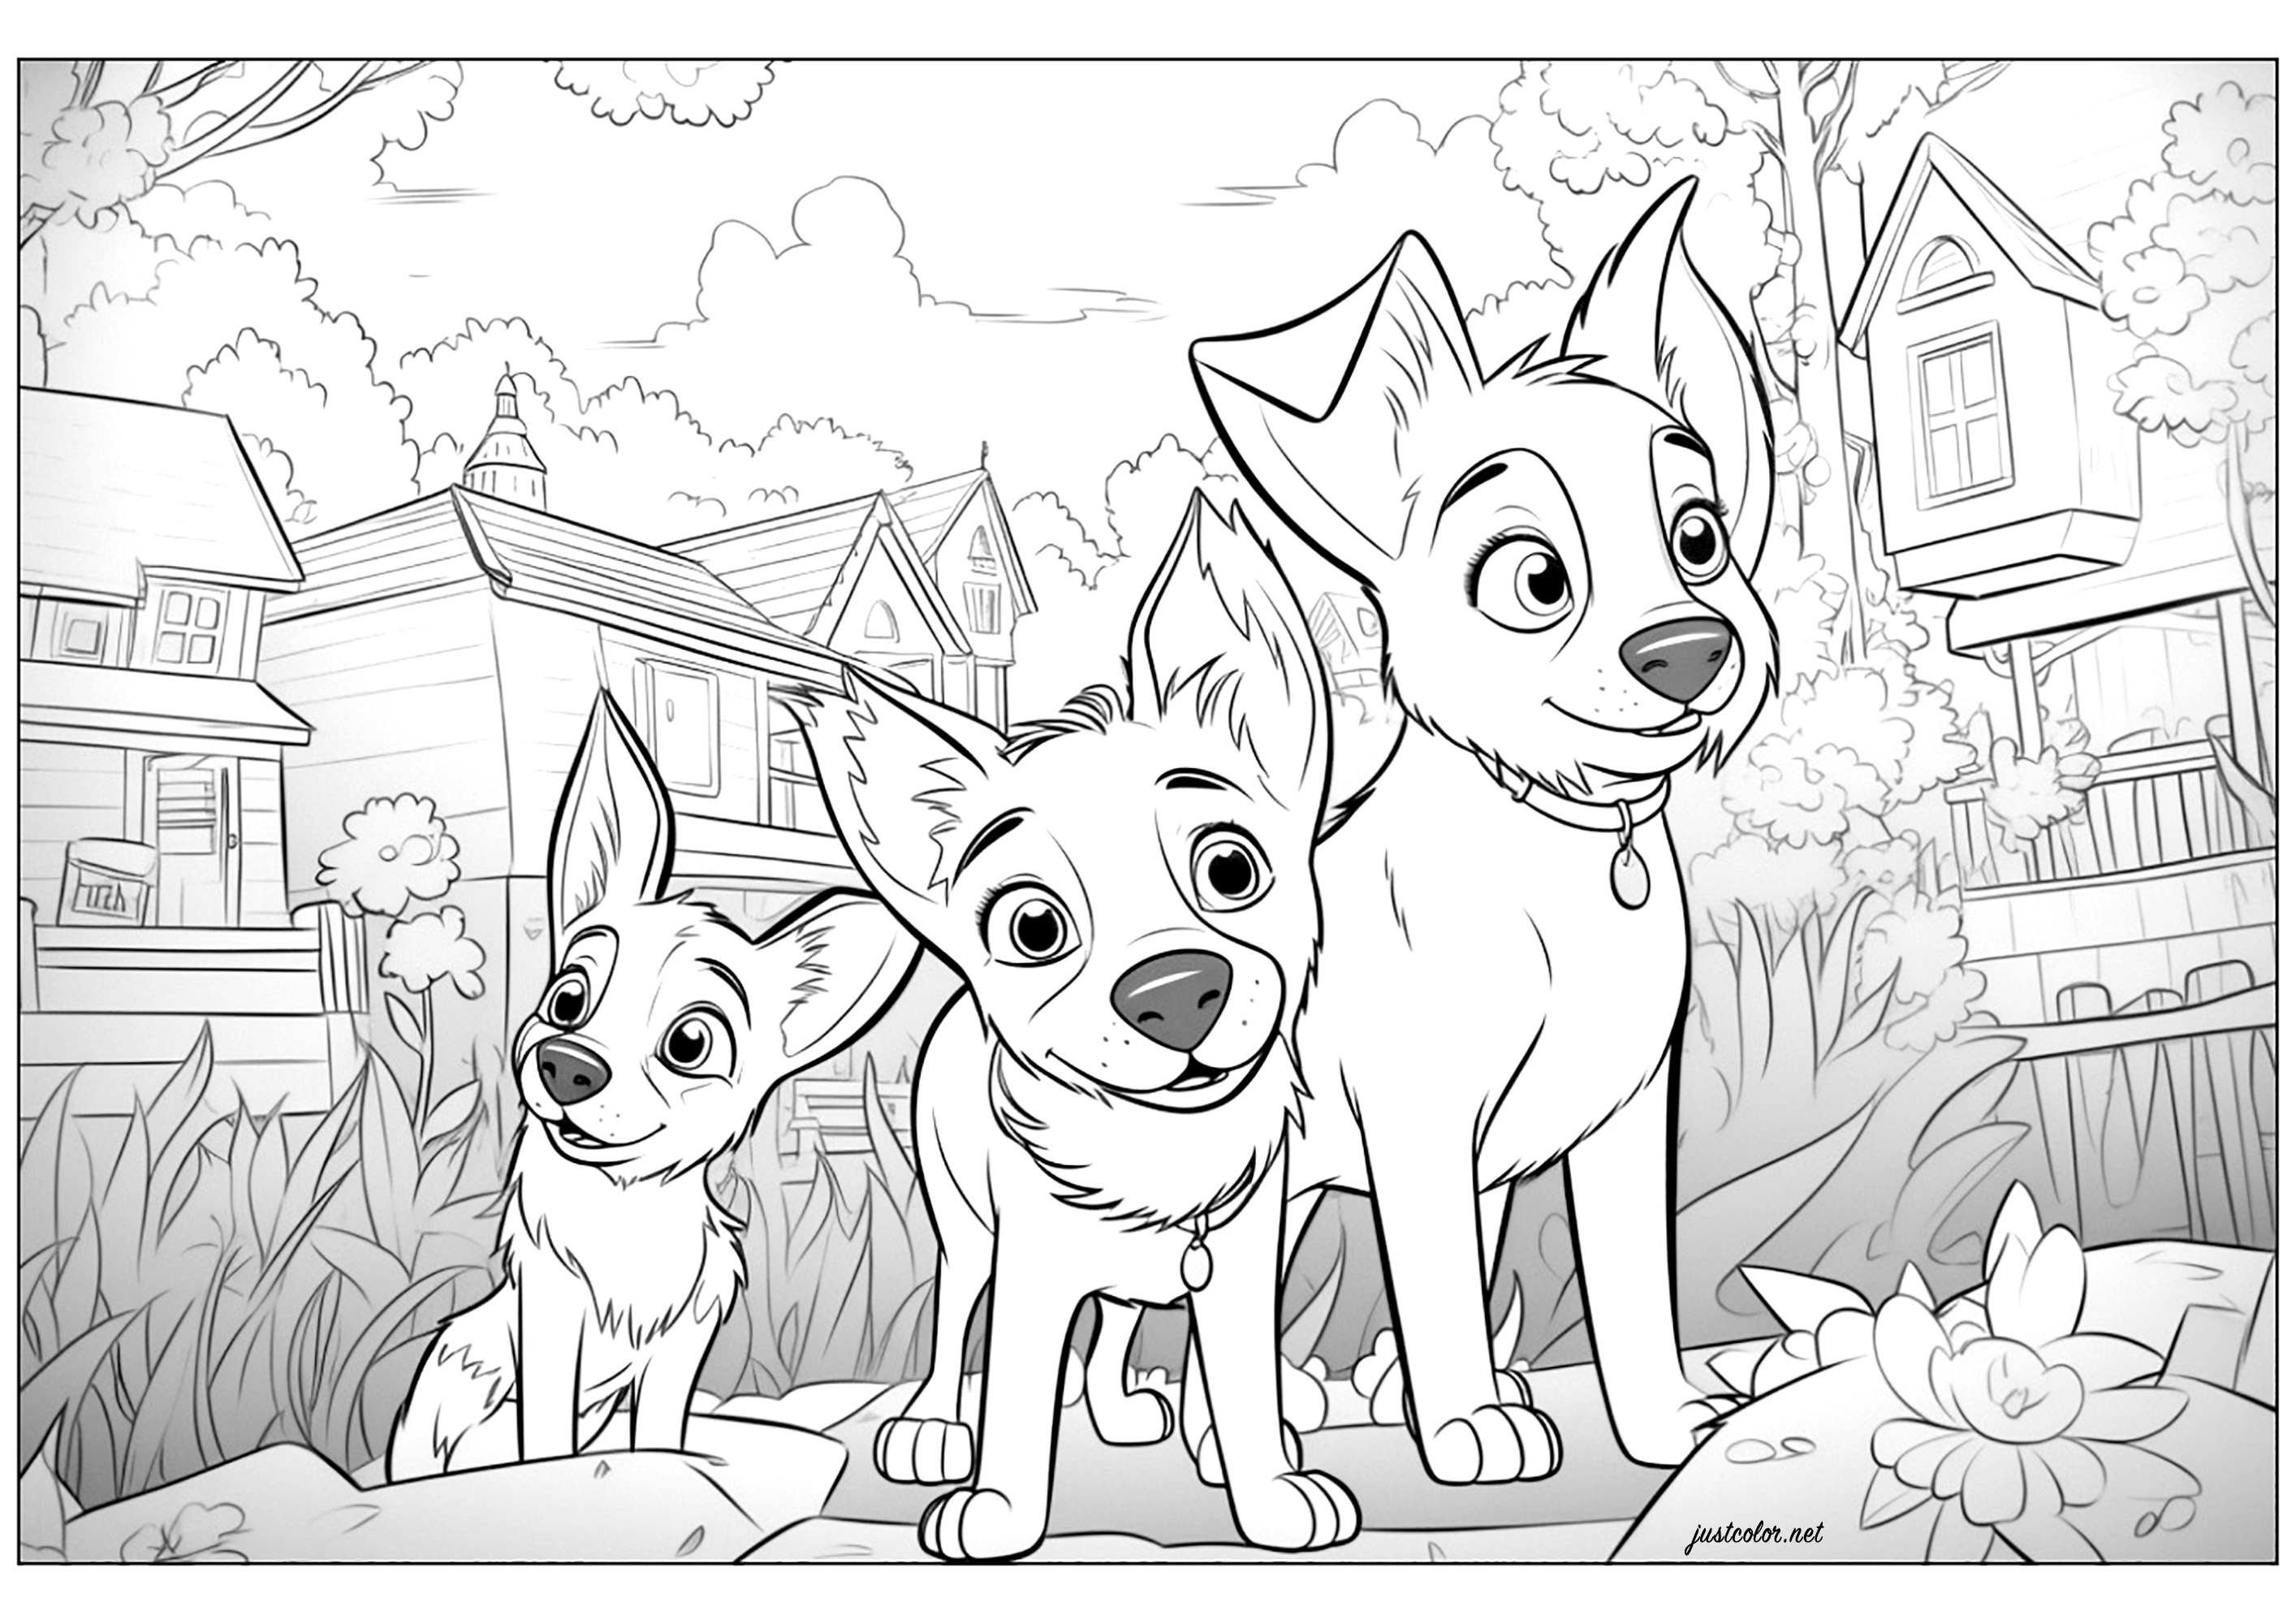 Tres perros dibujados al estilo Disney - Pixar. Colorea también todas las casas del fondo de esta original ilustración.